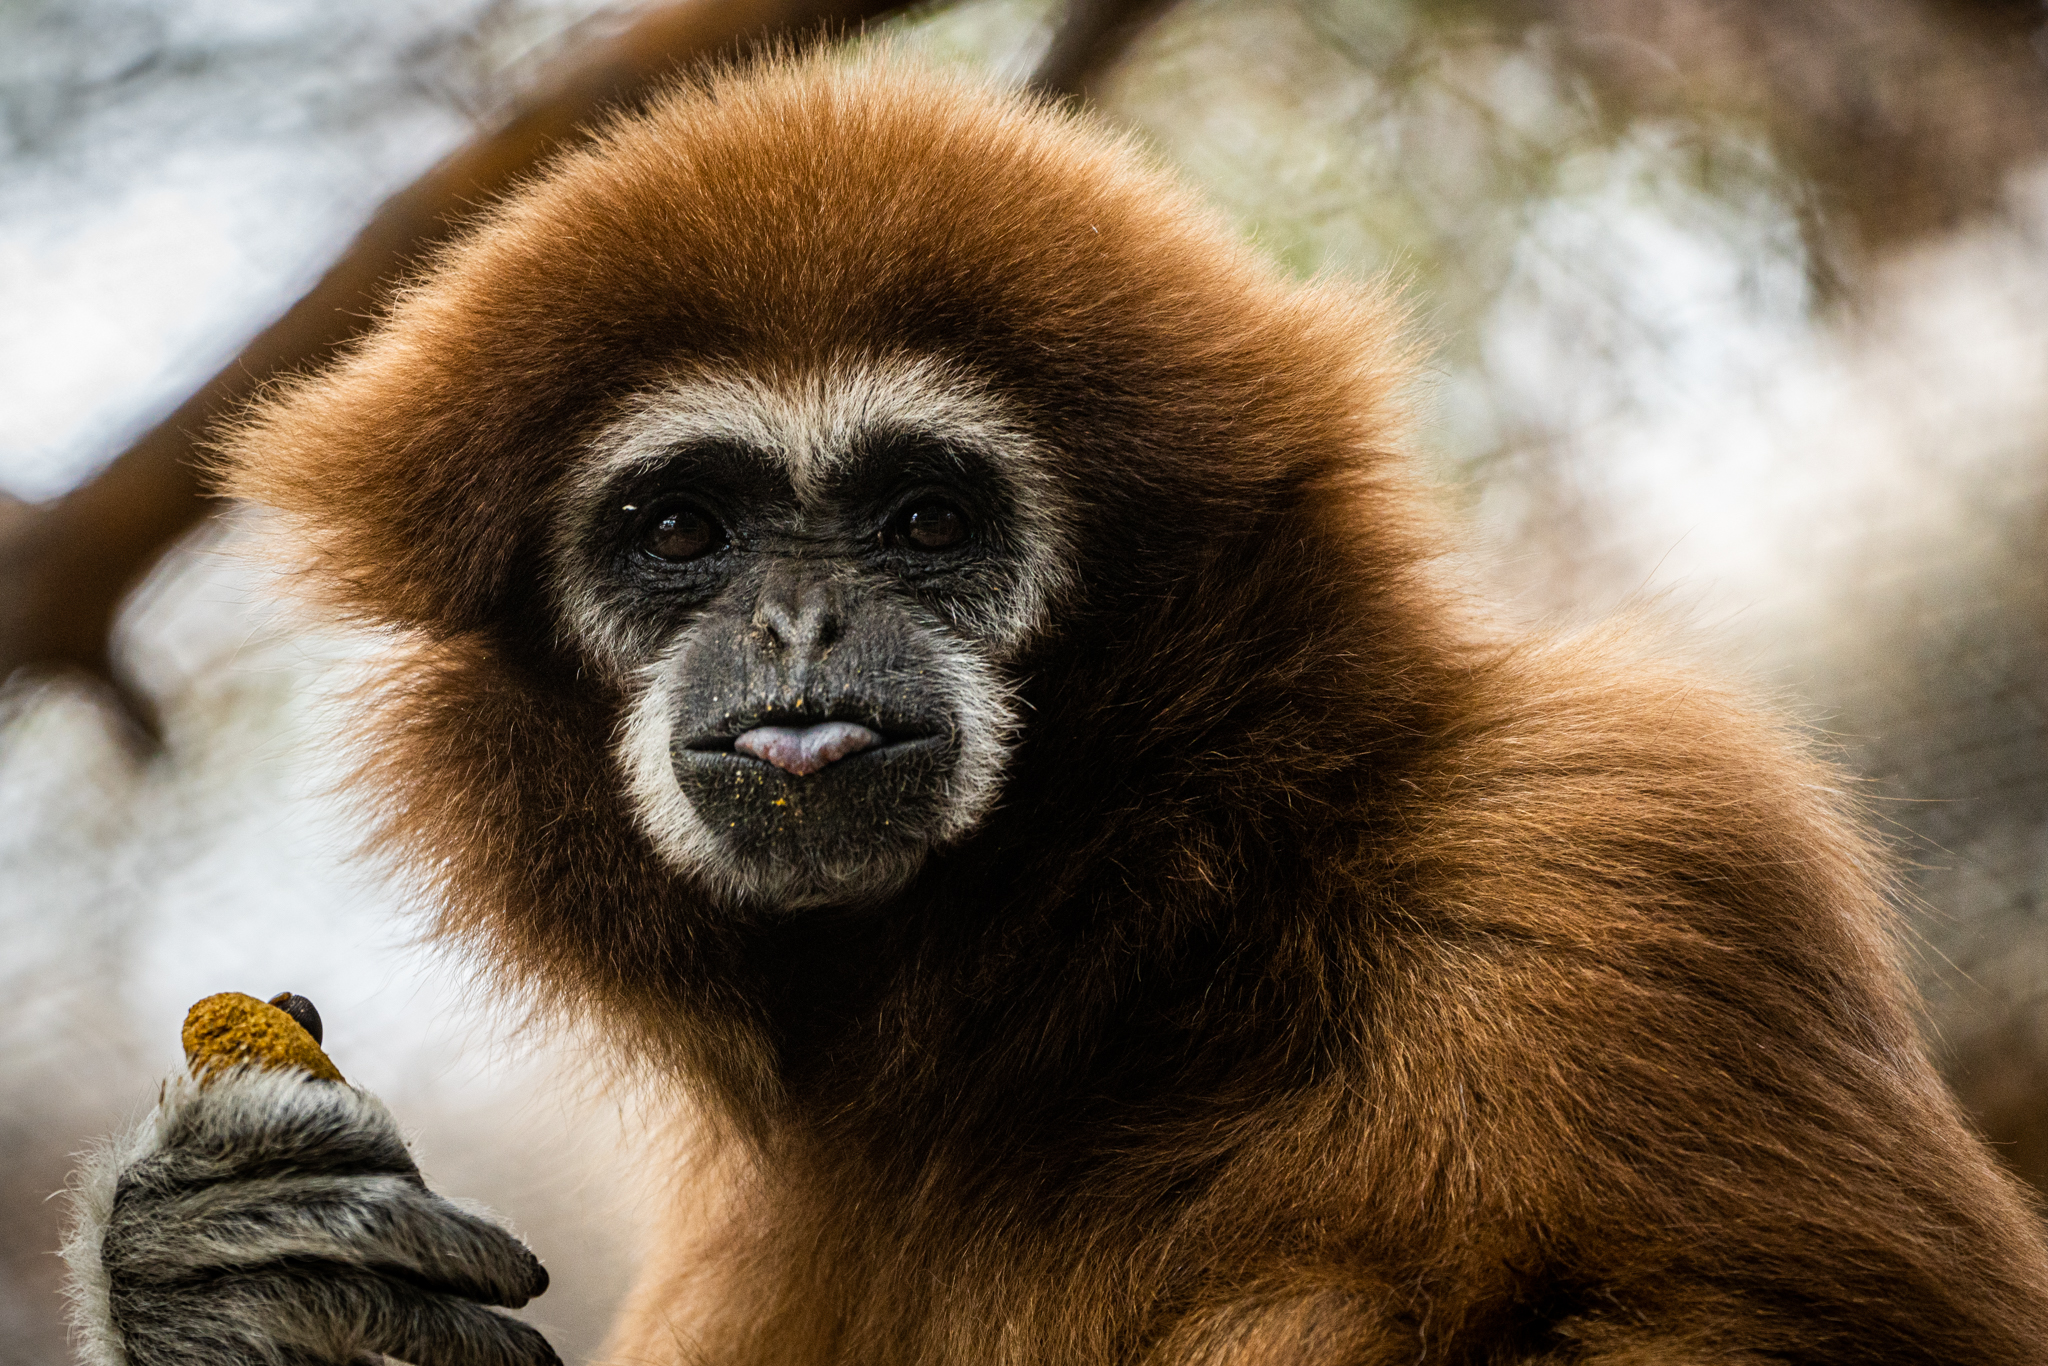 Gibbon Photo by Ashley Bown